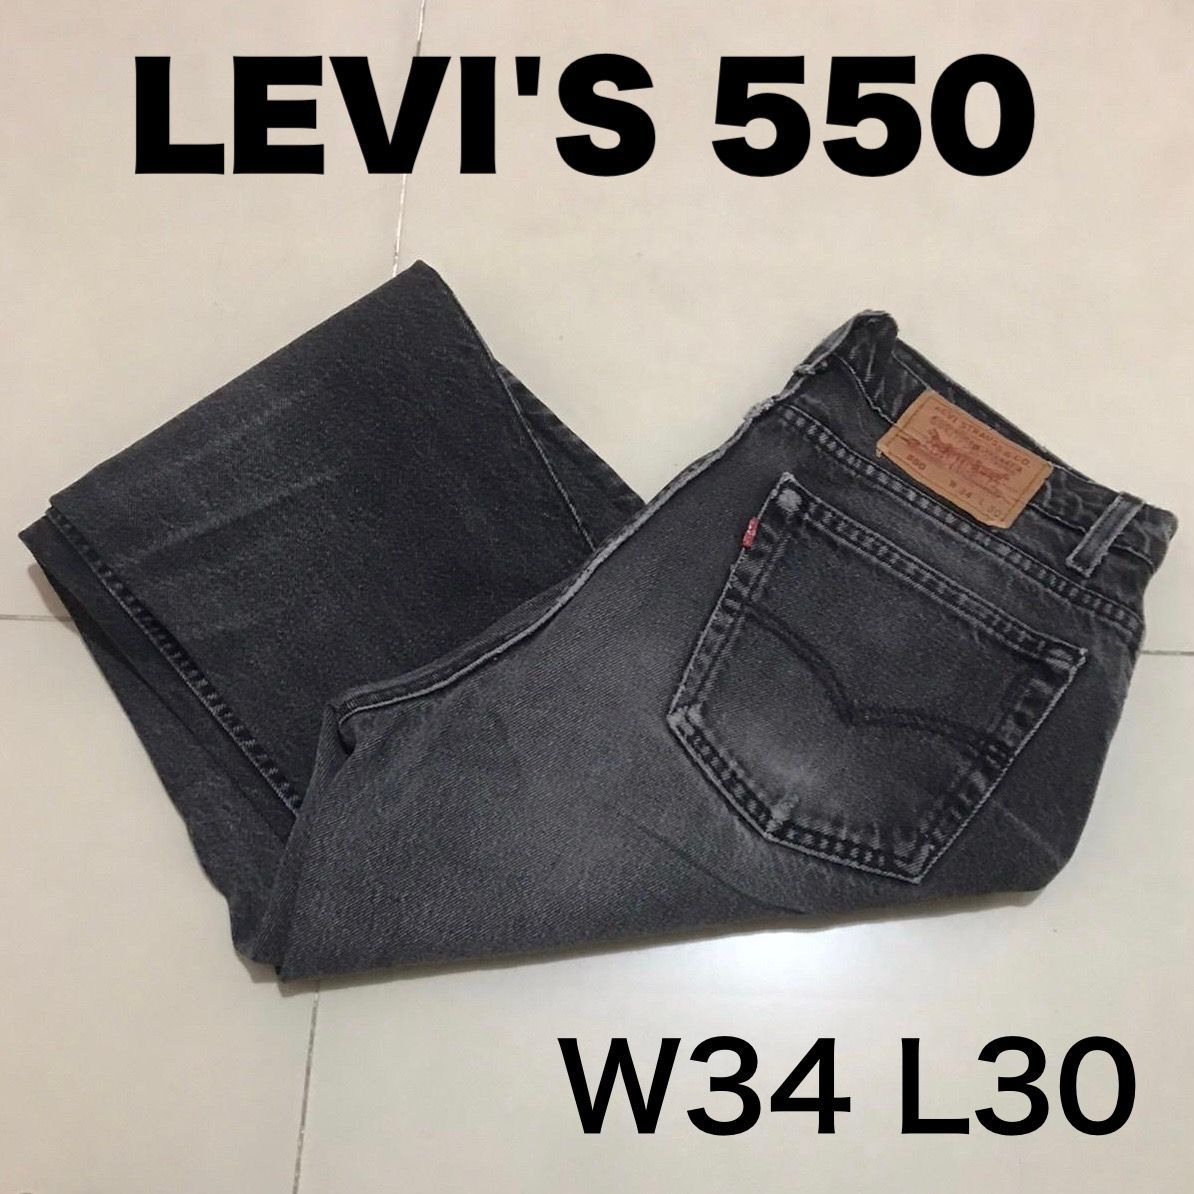 T348【Levi's 550 BLACK】W34 L30 USA製 ブラック ワイド バギー 古着 